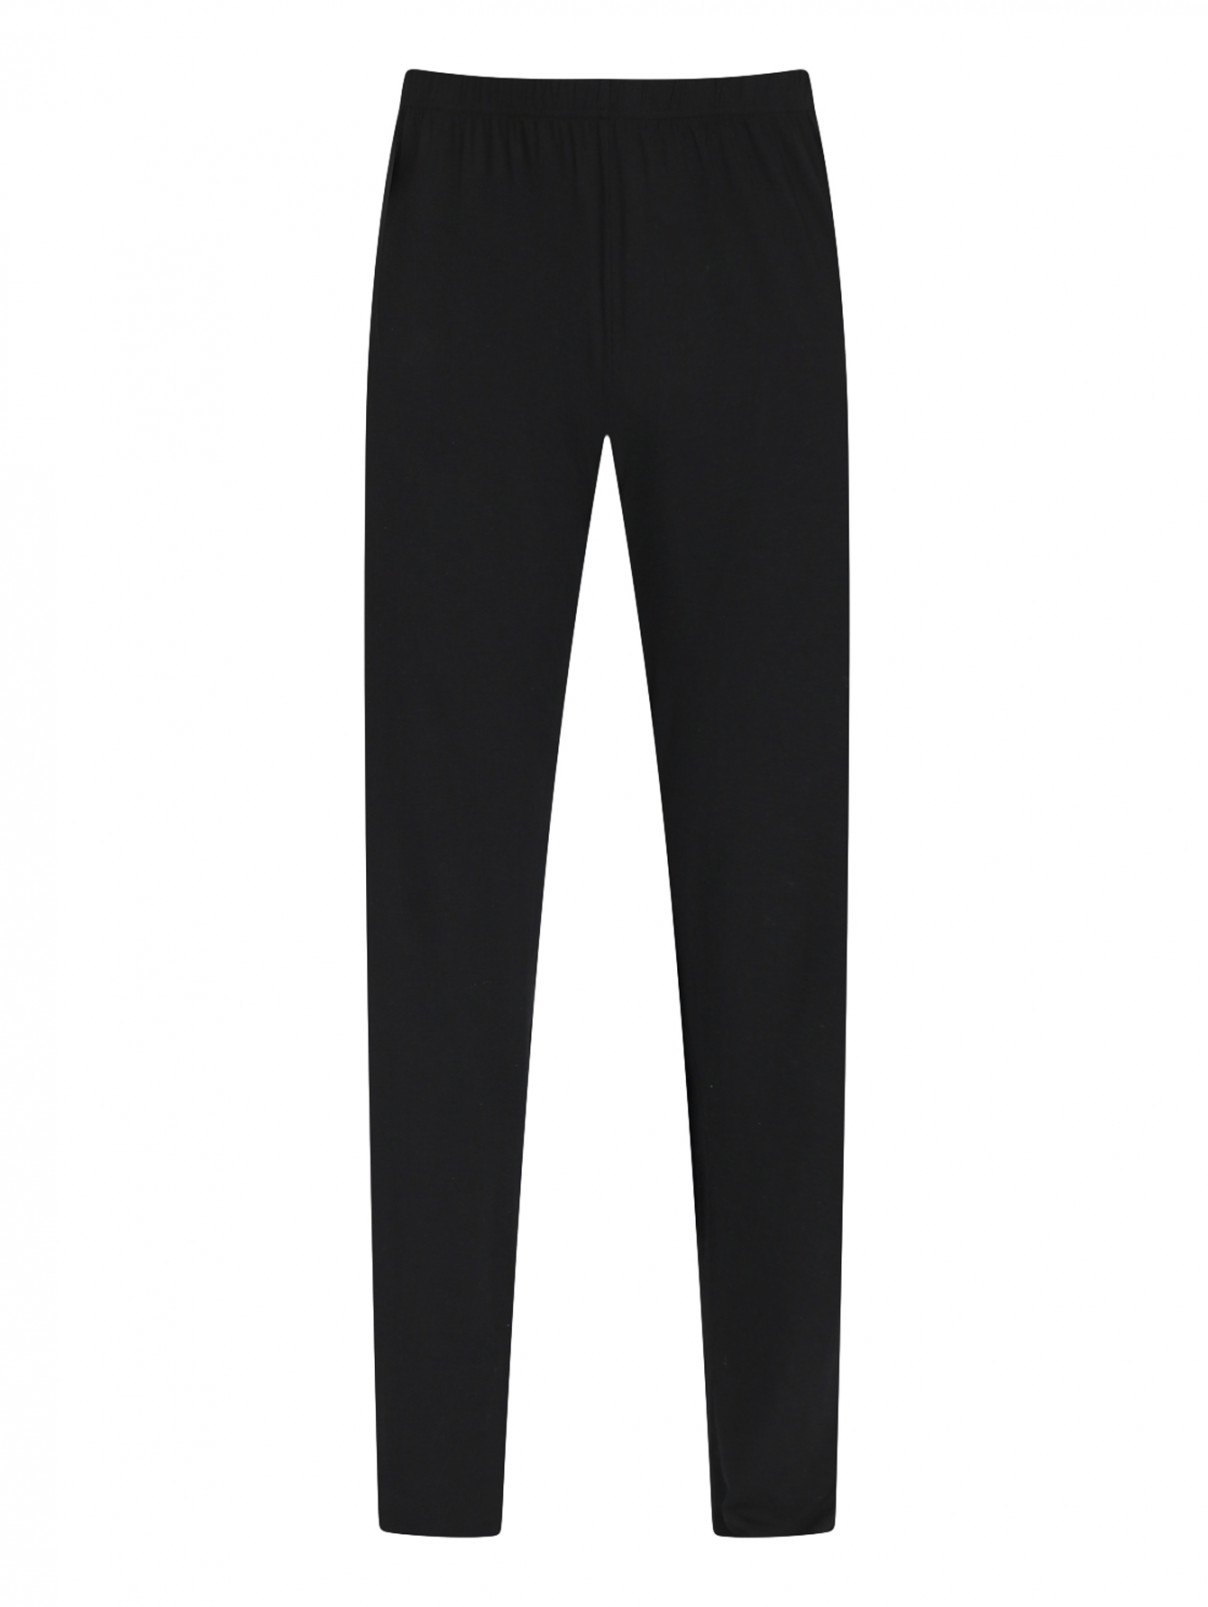 Однотонные брюки на резинке Nero Perla  –  Общий вид  – Цвет:  Черный